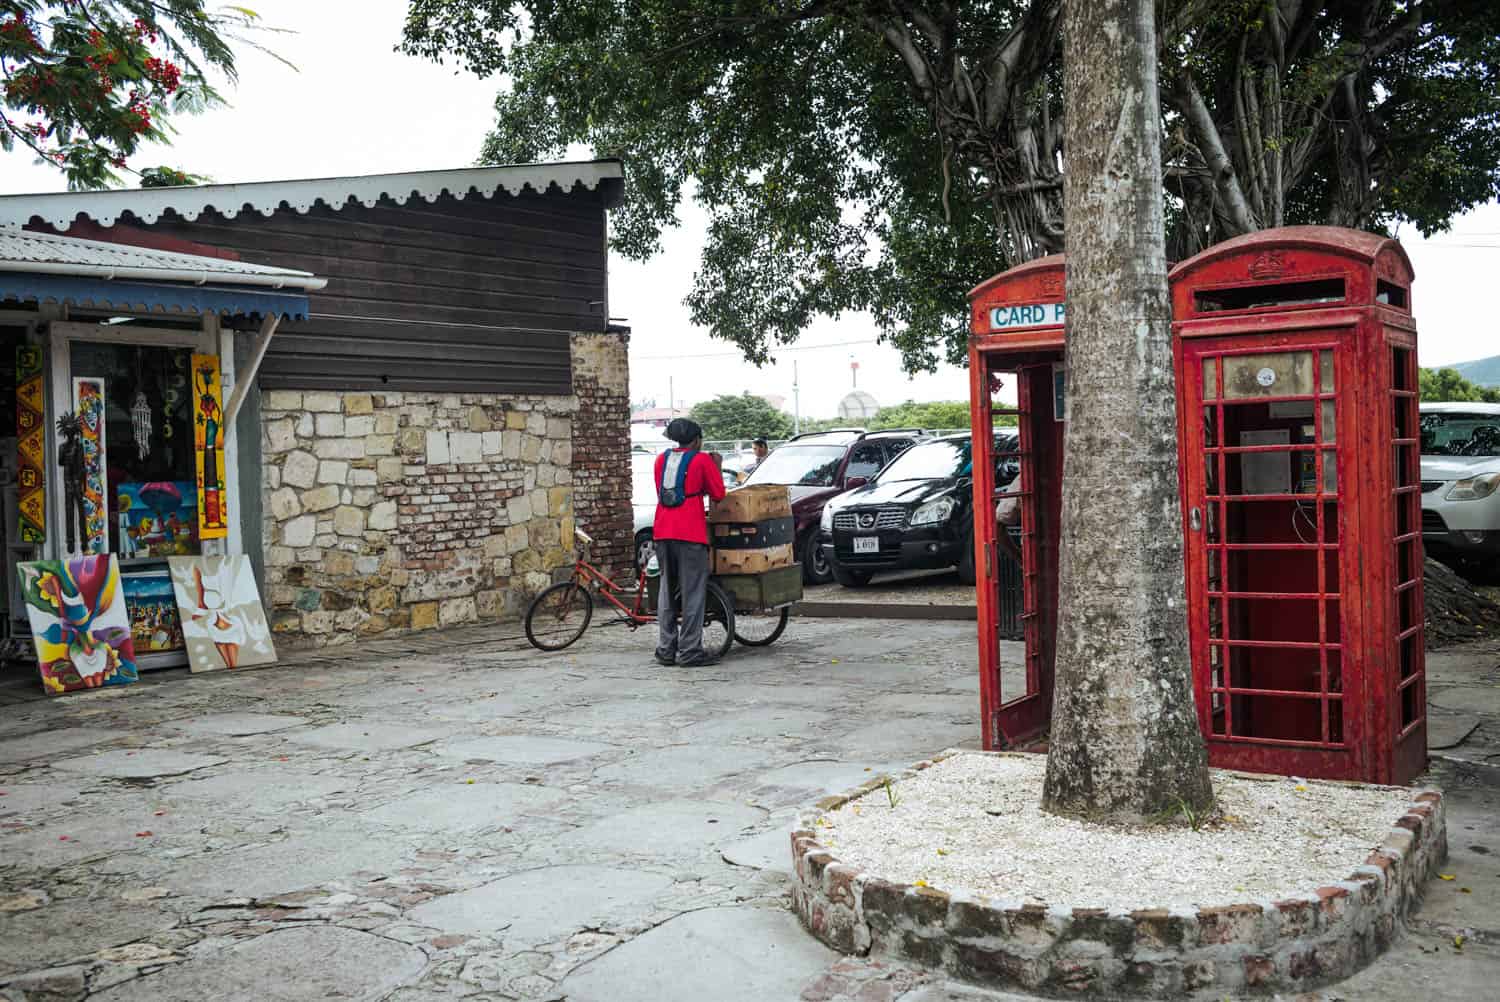 kleiner Markt mit einem Mann, der Dinge auf einem Fahrrad transportiert, und zwei Telefonzellen